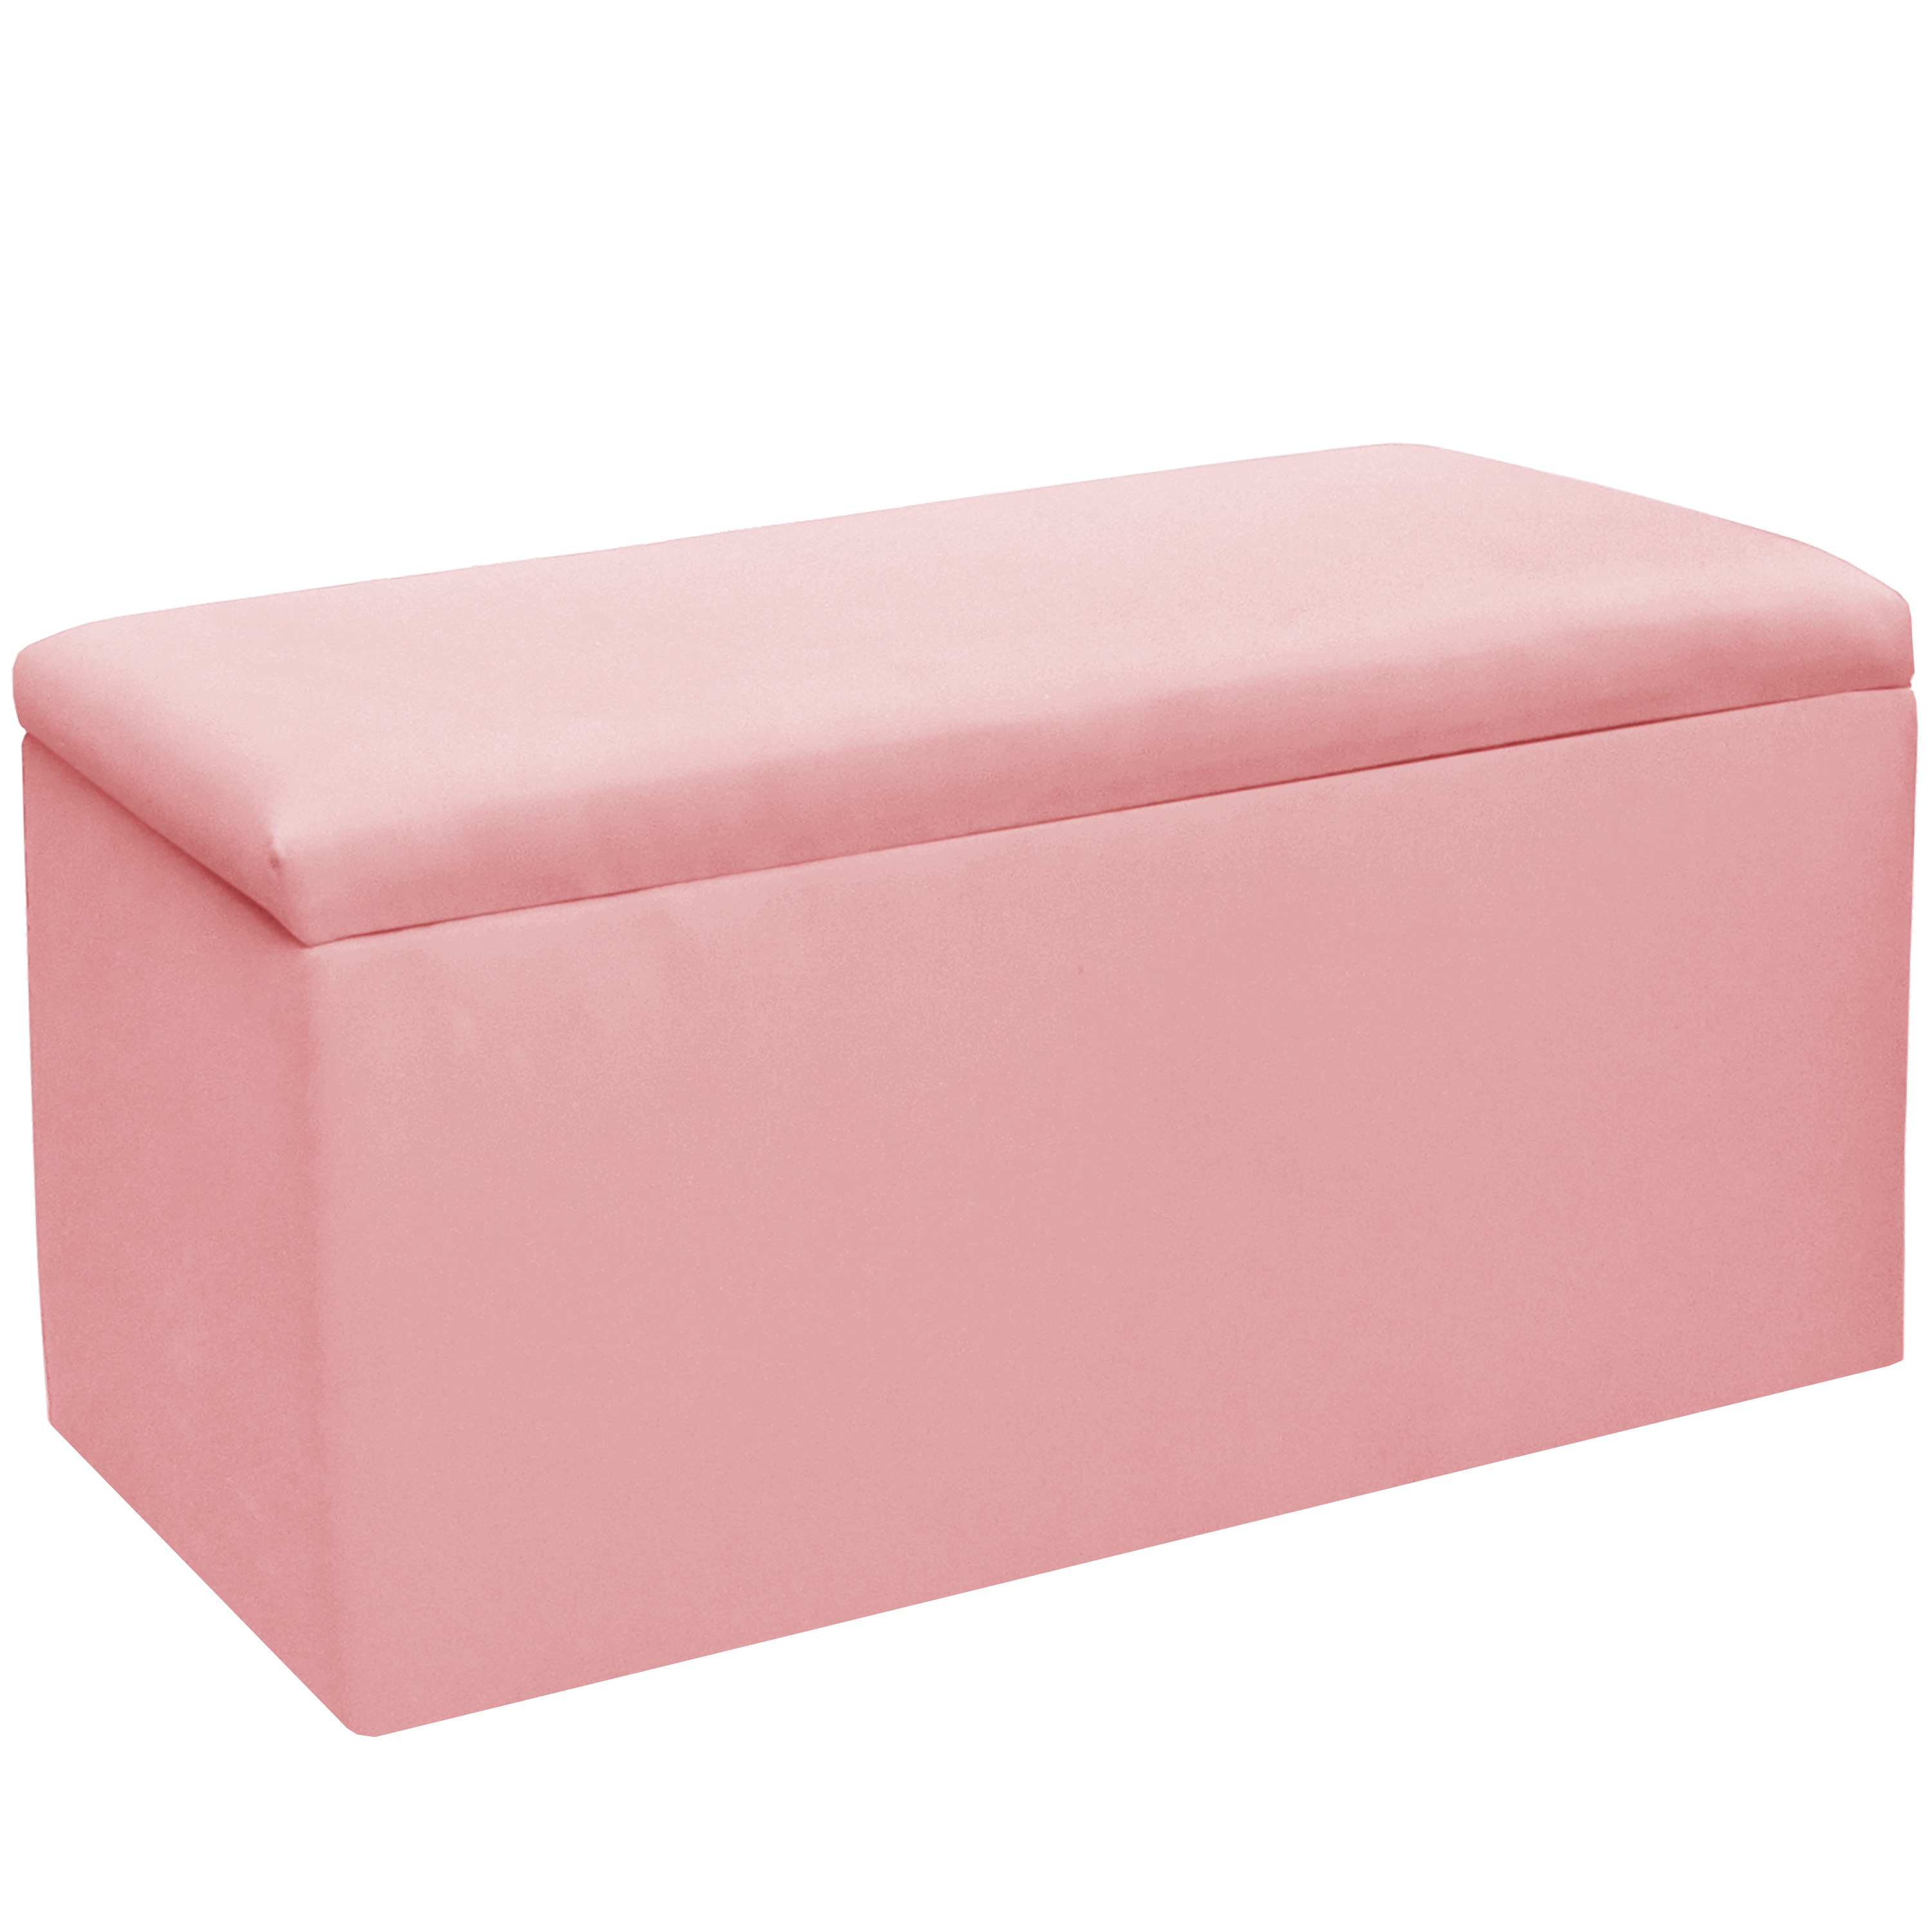 Skyline Furniture Kids Storage Bench In Duck Light Pink Free